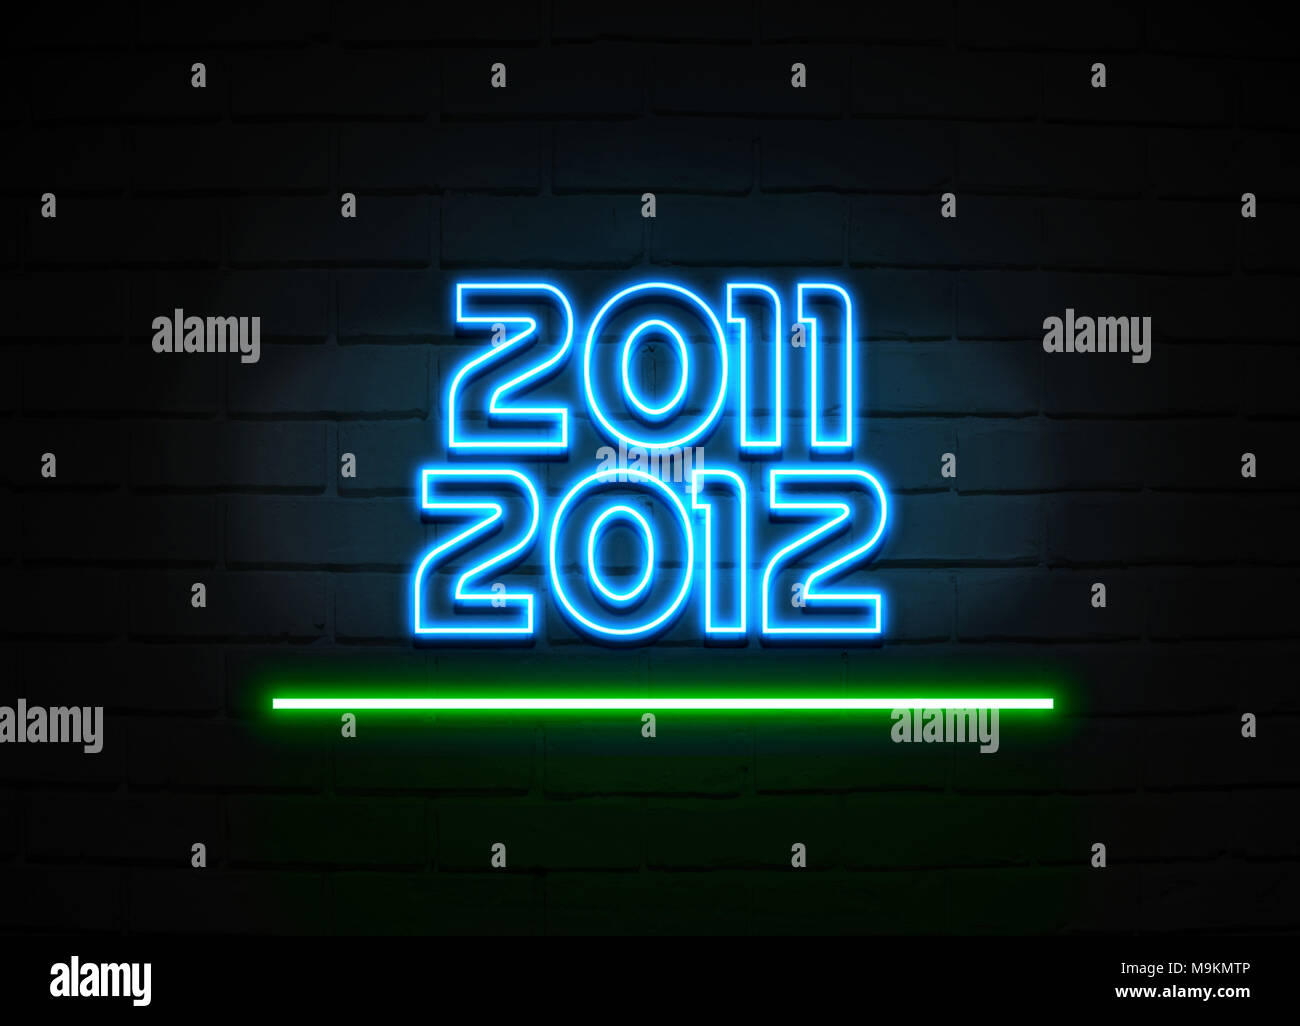 2011 2012 2013 Leuchtreklame - glühende Leuchtreklame auf brickwall Wand - 3D-Royalty Free Stock Illustration dargestellt. Stockfoto